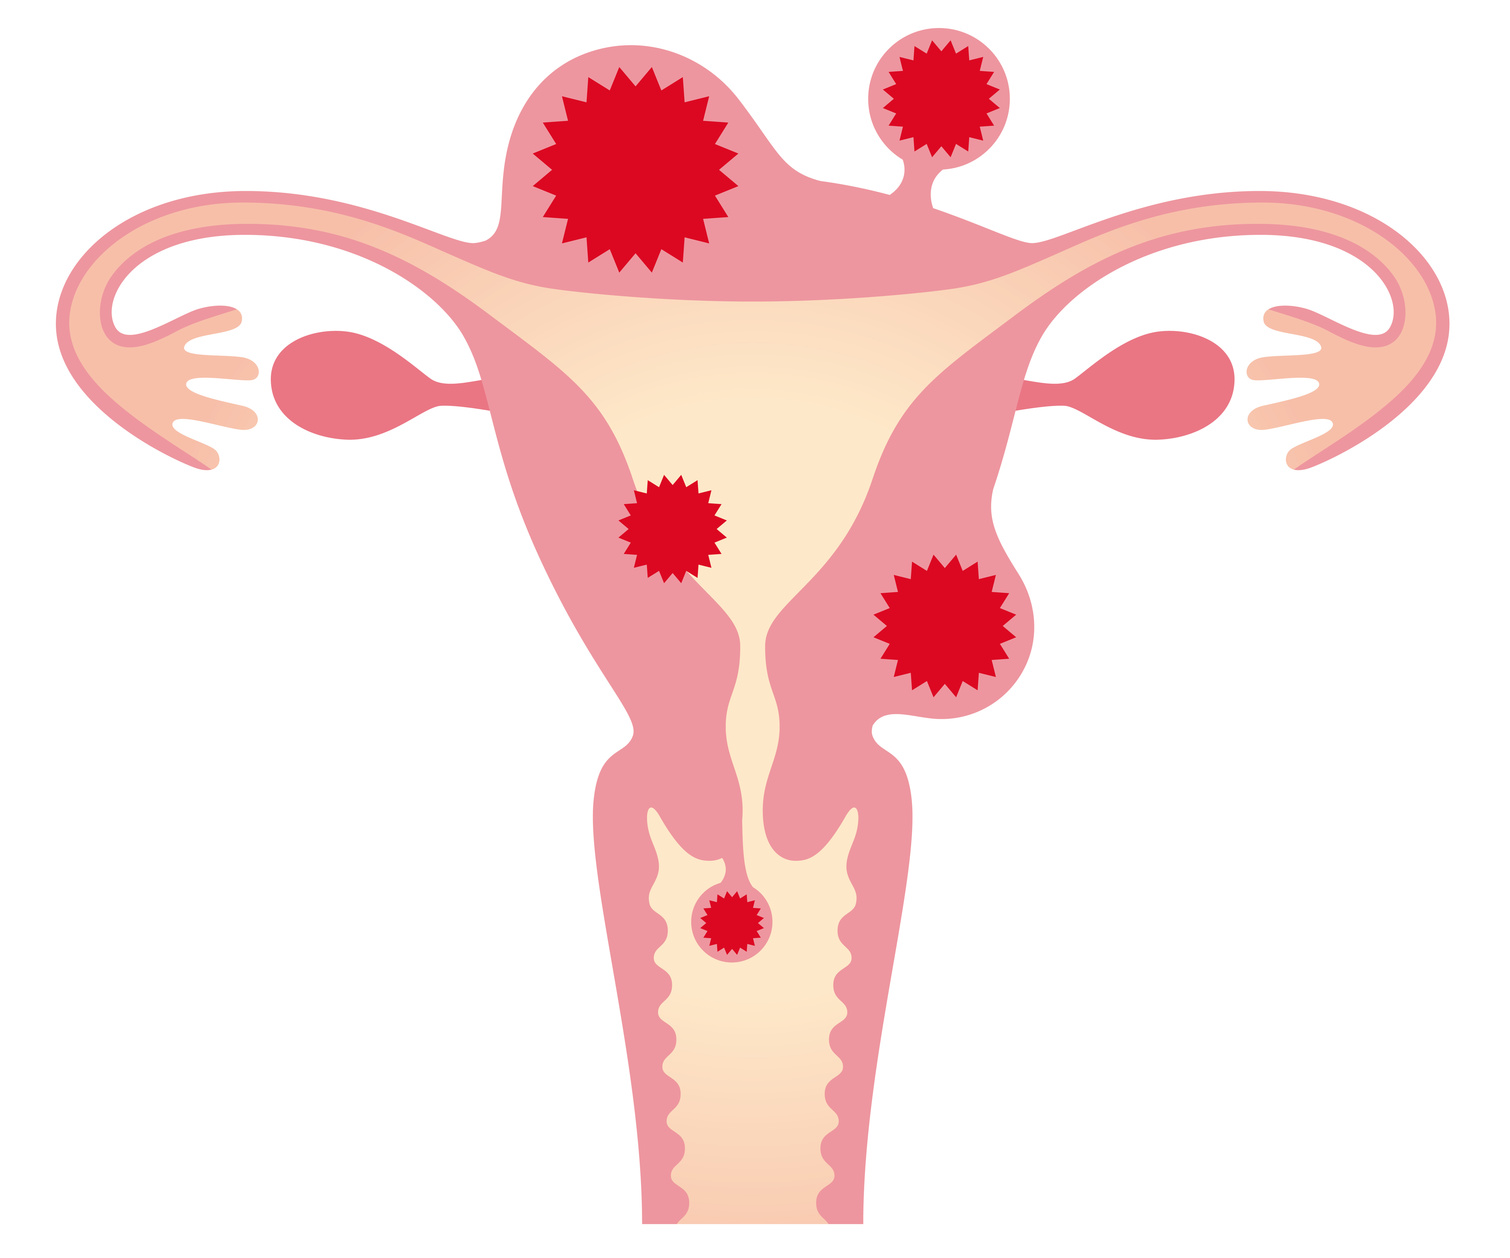 子宮筋腫は良性腫瘍とはいえ、早期発見が重要